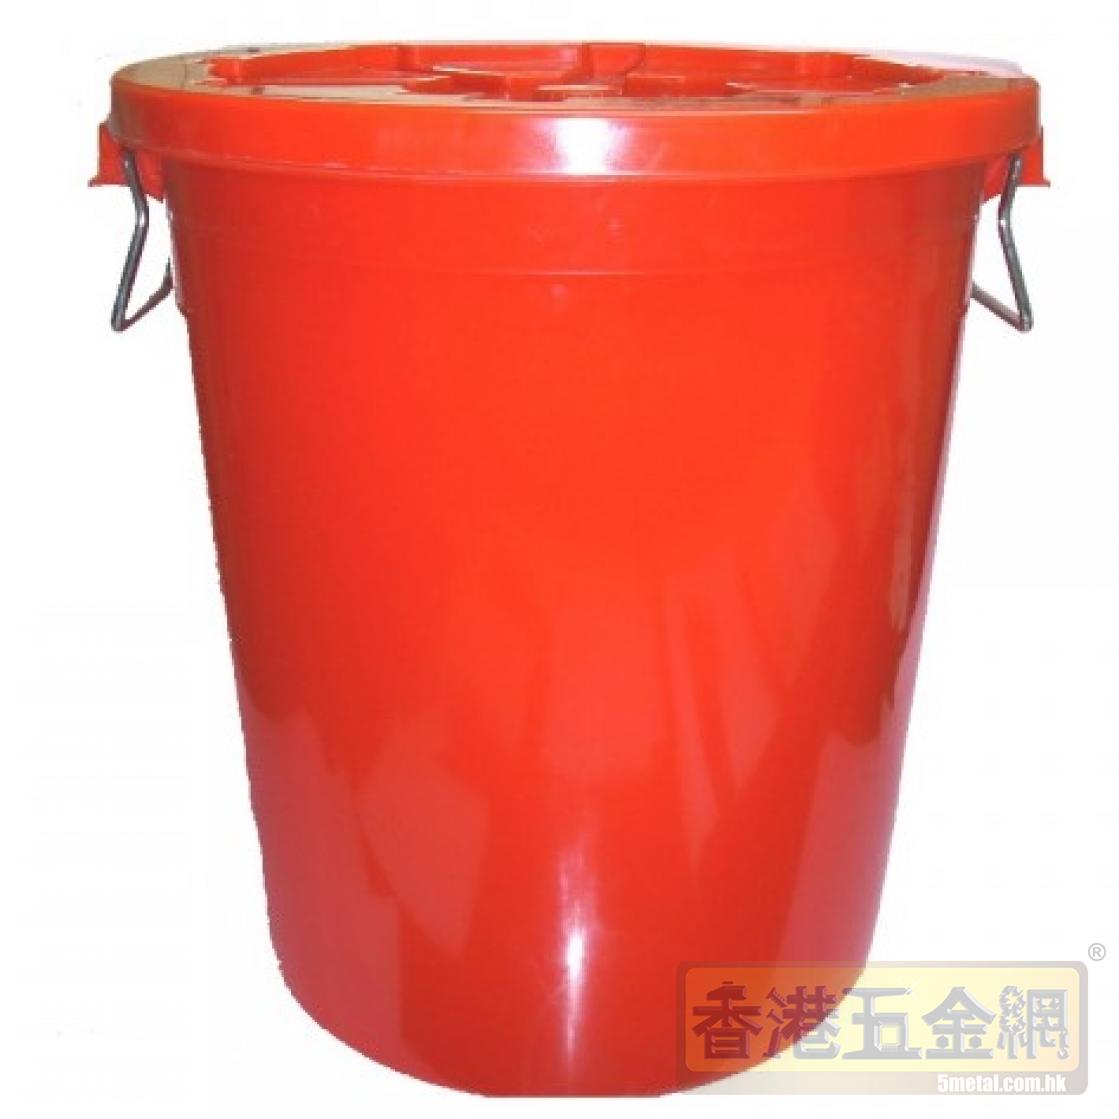 (批發)地盤大塑膠桶批發-膠桶供應商-元朗區-膠桶又名:大塑膠桶,工業塑膠桶,水桶,圓形塑膠桶,儲水桶